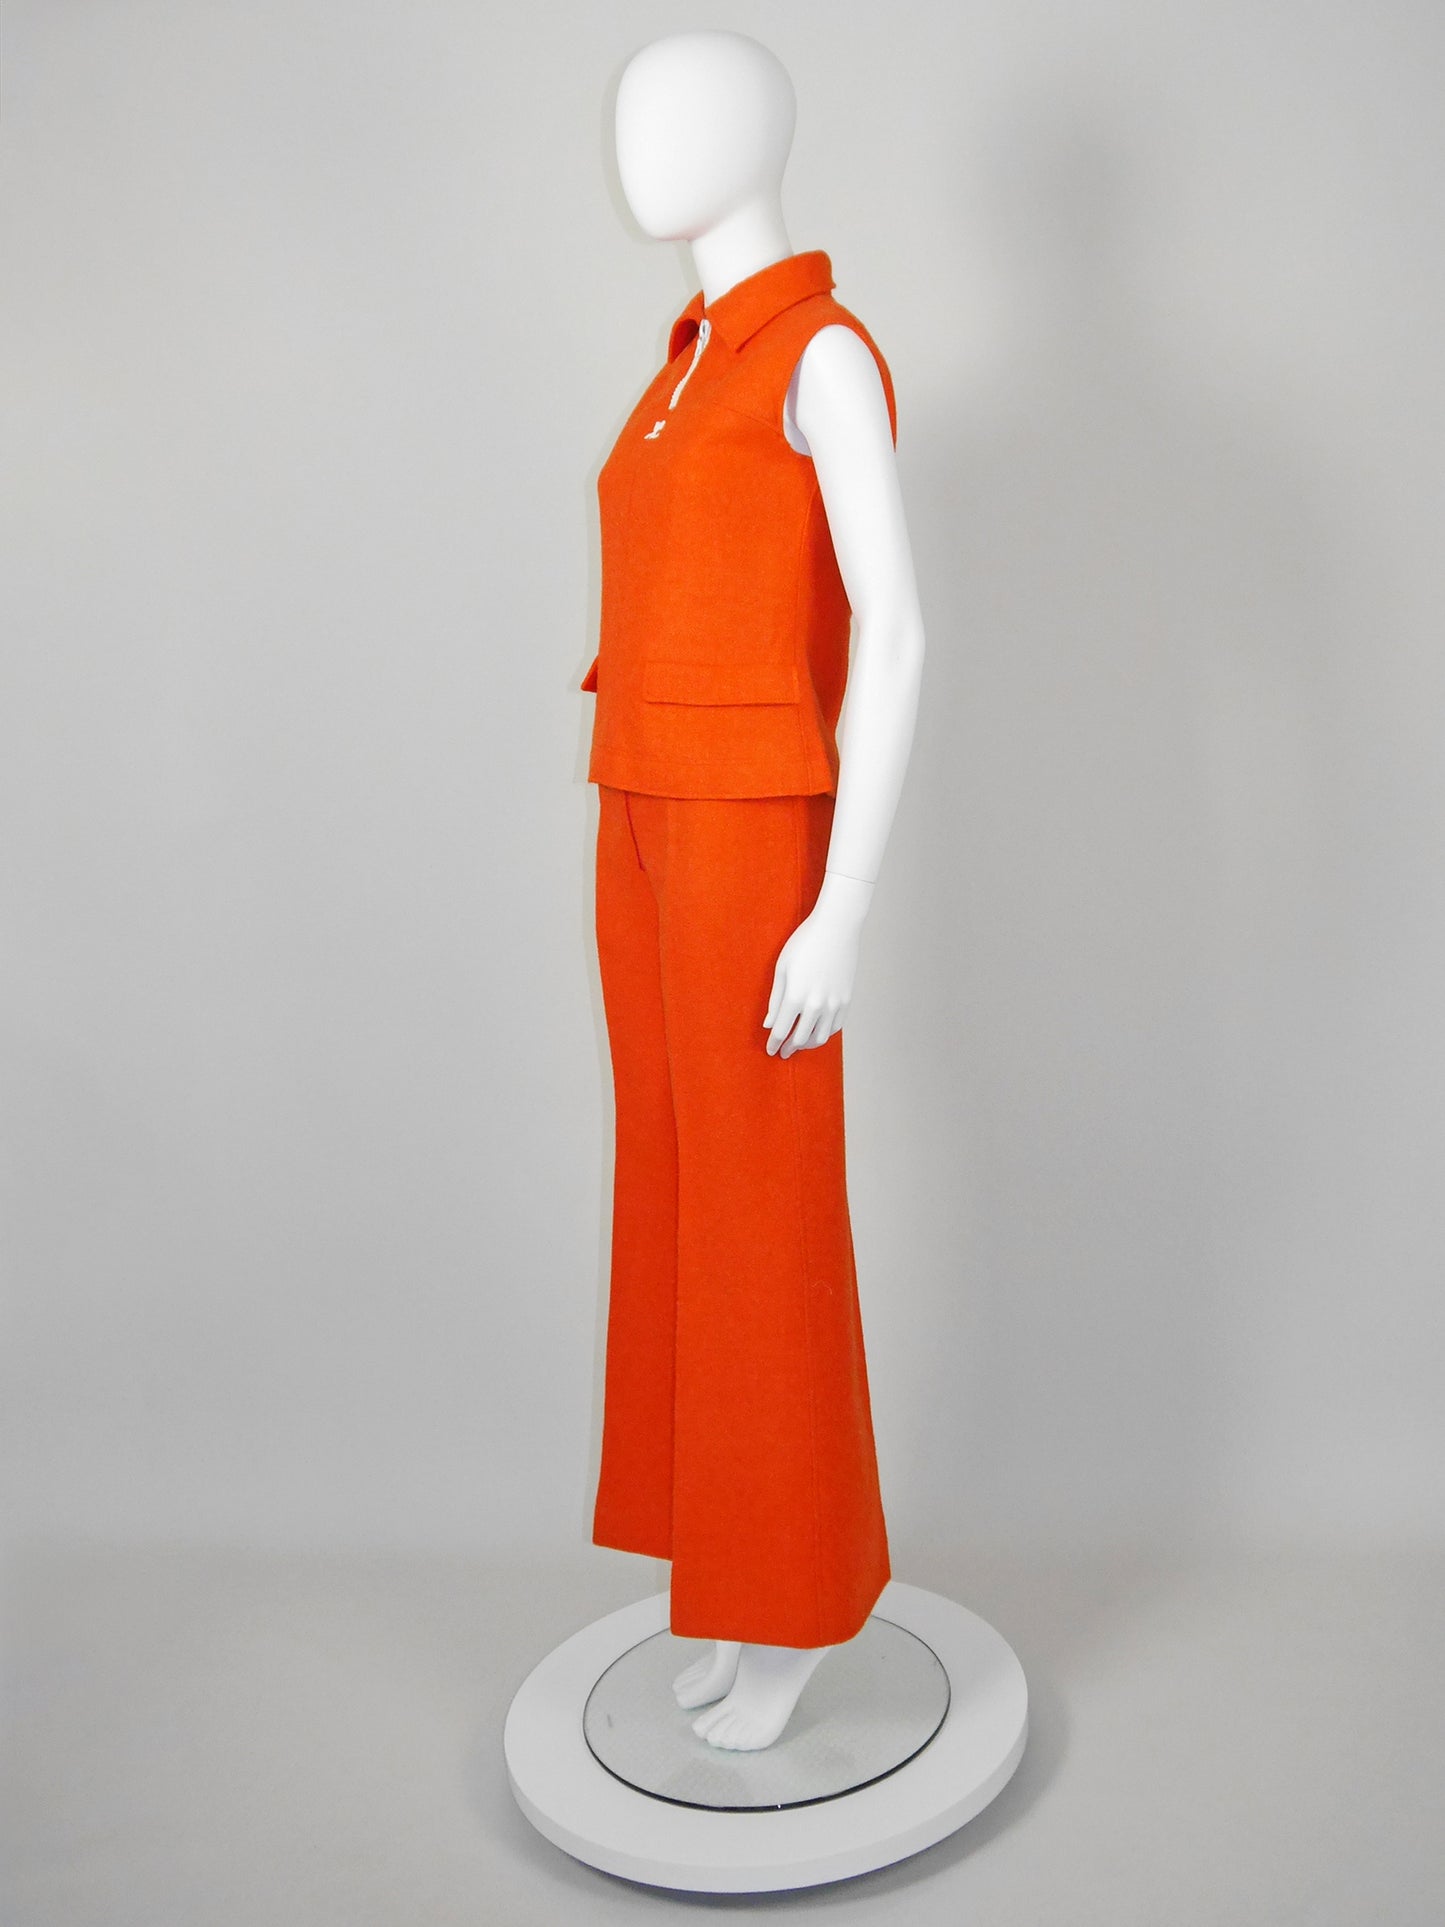 COURRÈGES 1960s 1970s Vintage Orange Wool Top & Pants Suit w/ Logo Size XS